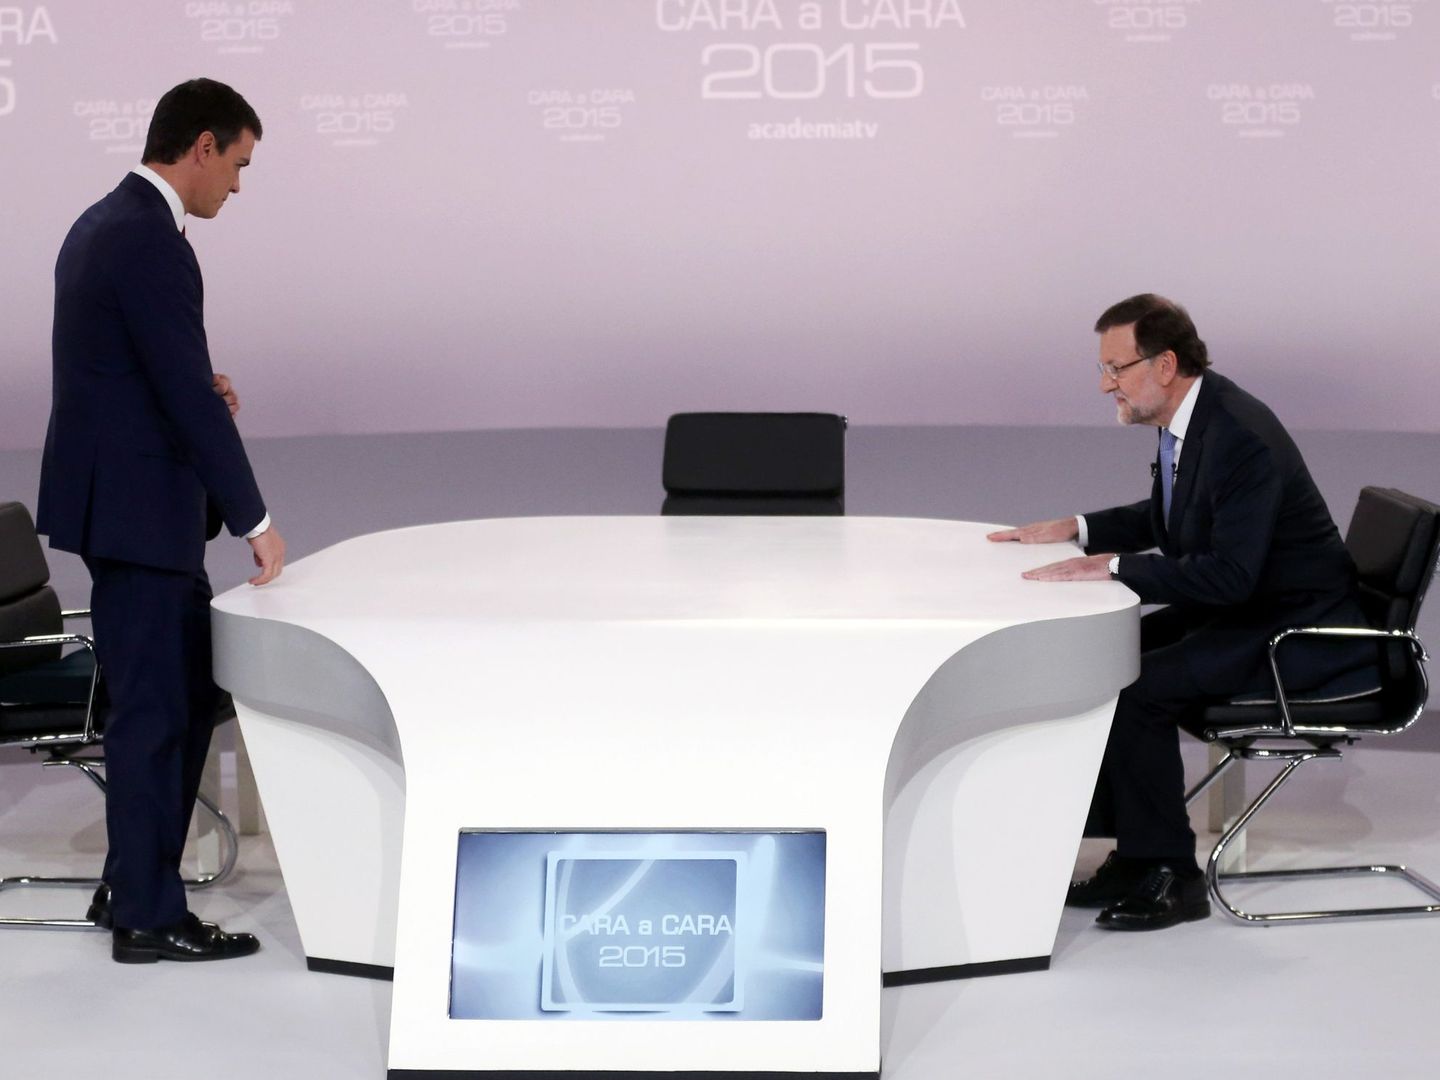 El último cara a cara electoral de dos líderes nacionales: el de Pedro Sánchez y Mariano Rajoy, celebrado el 14 de diciembre de 2015 y organizado por la Academia de la Televisión. (Reuters)